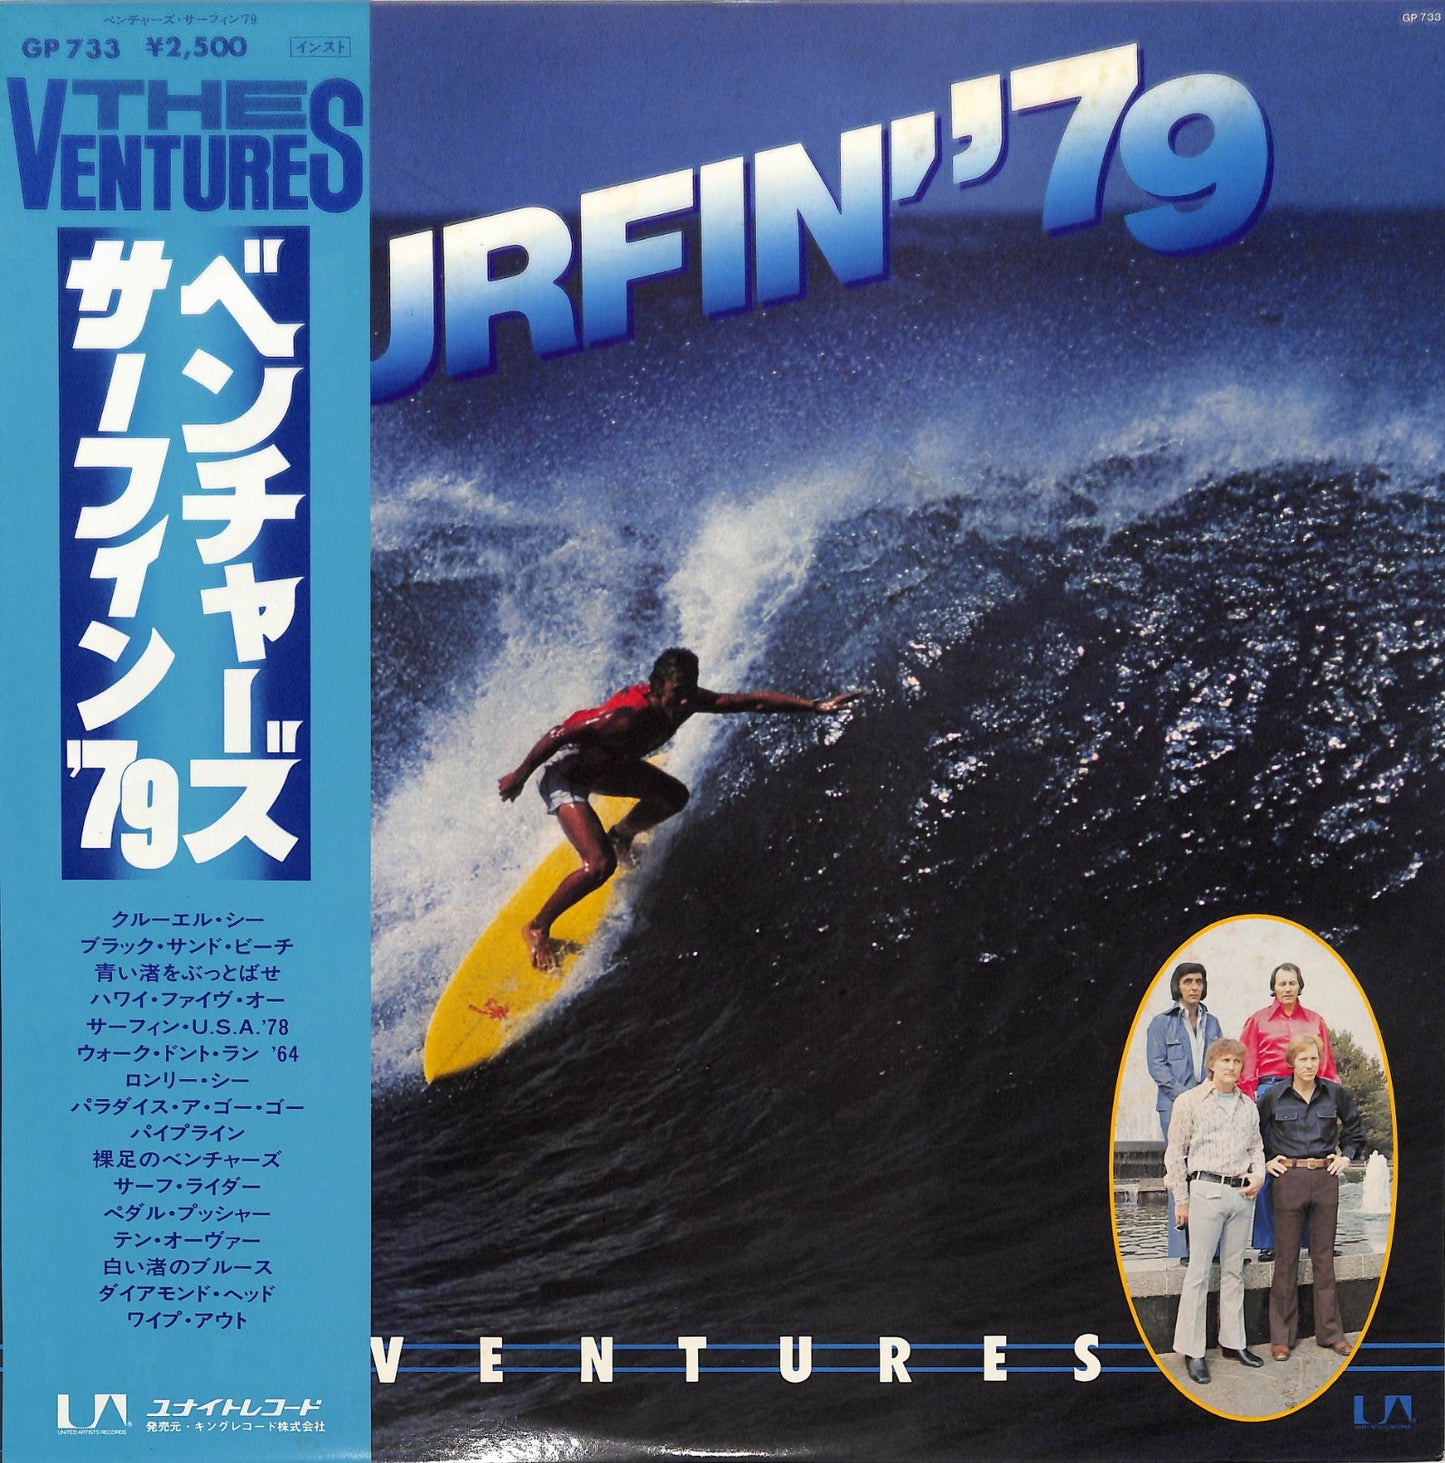 THE VENTURES - Surfin' '79